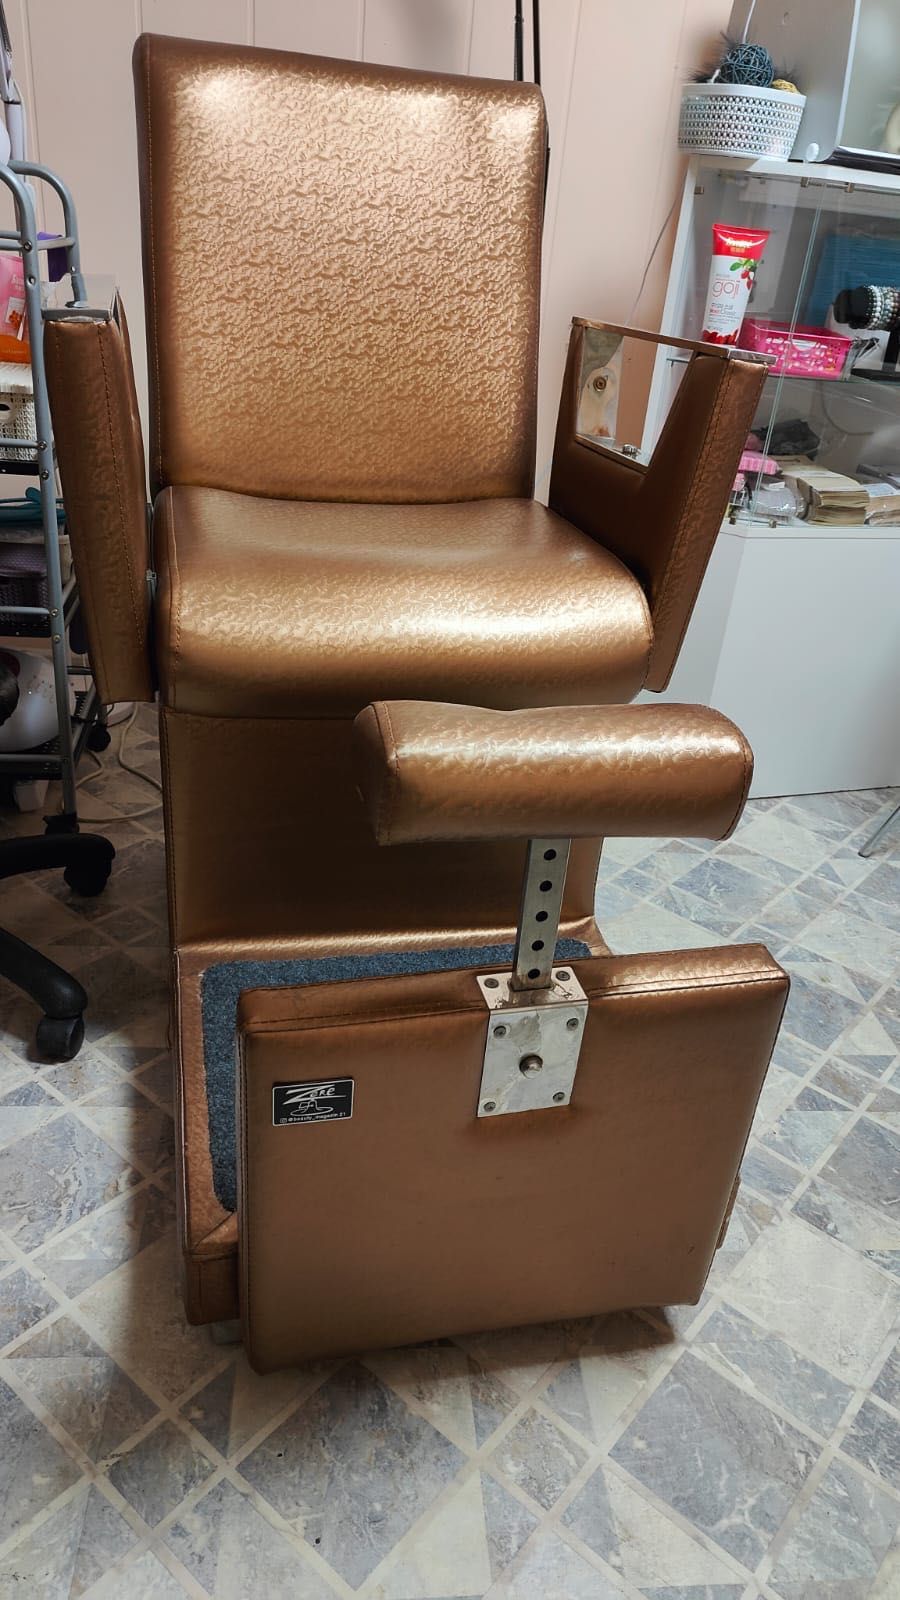 Продам педикюрное кресло